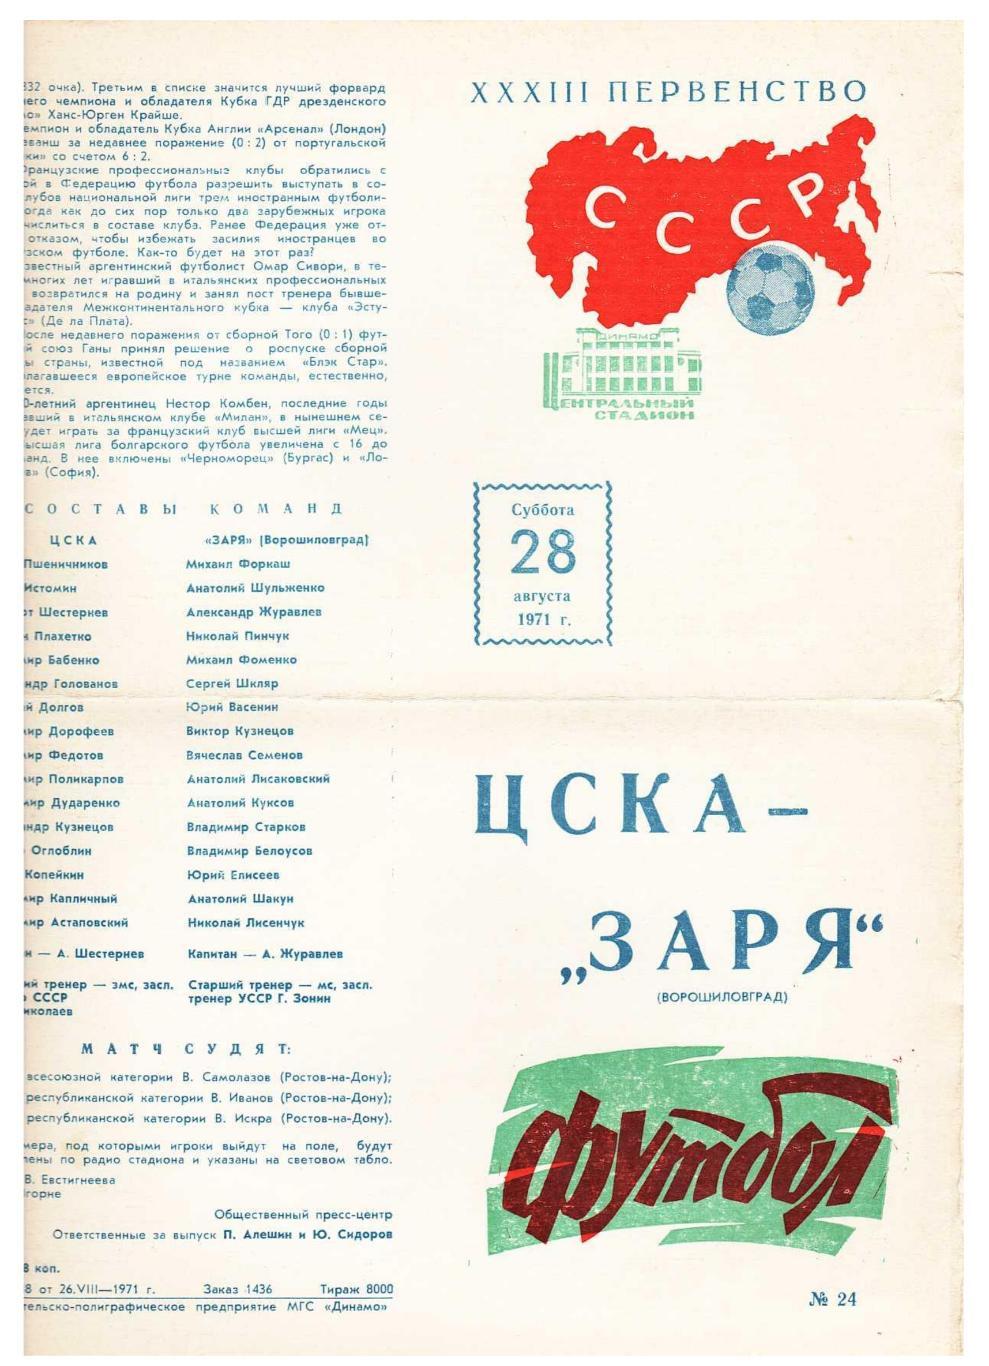 Футбол. 28.08. 1971 г. ЦСКА (Москва) – Заря (Ворошиловград). Первенство СССР.